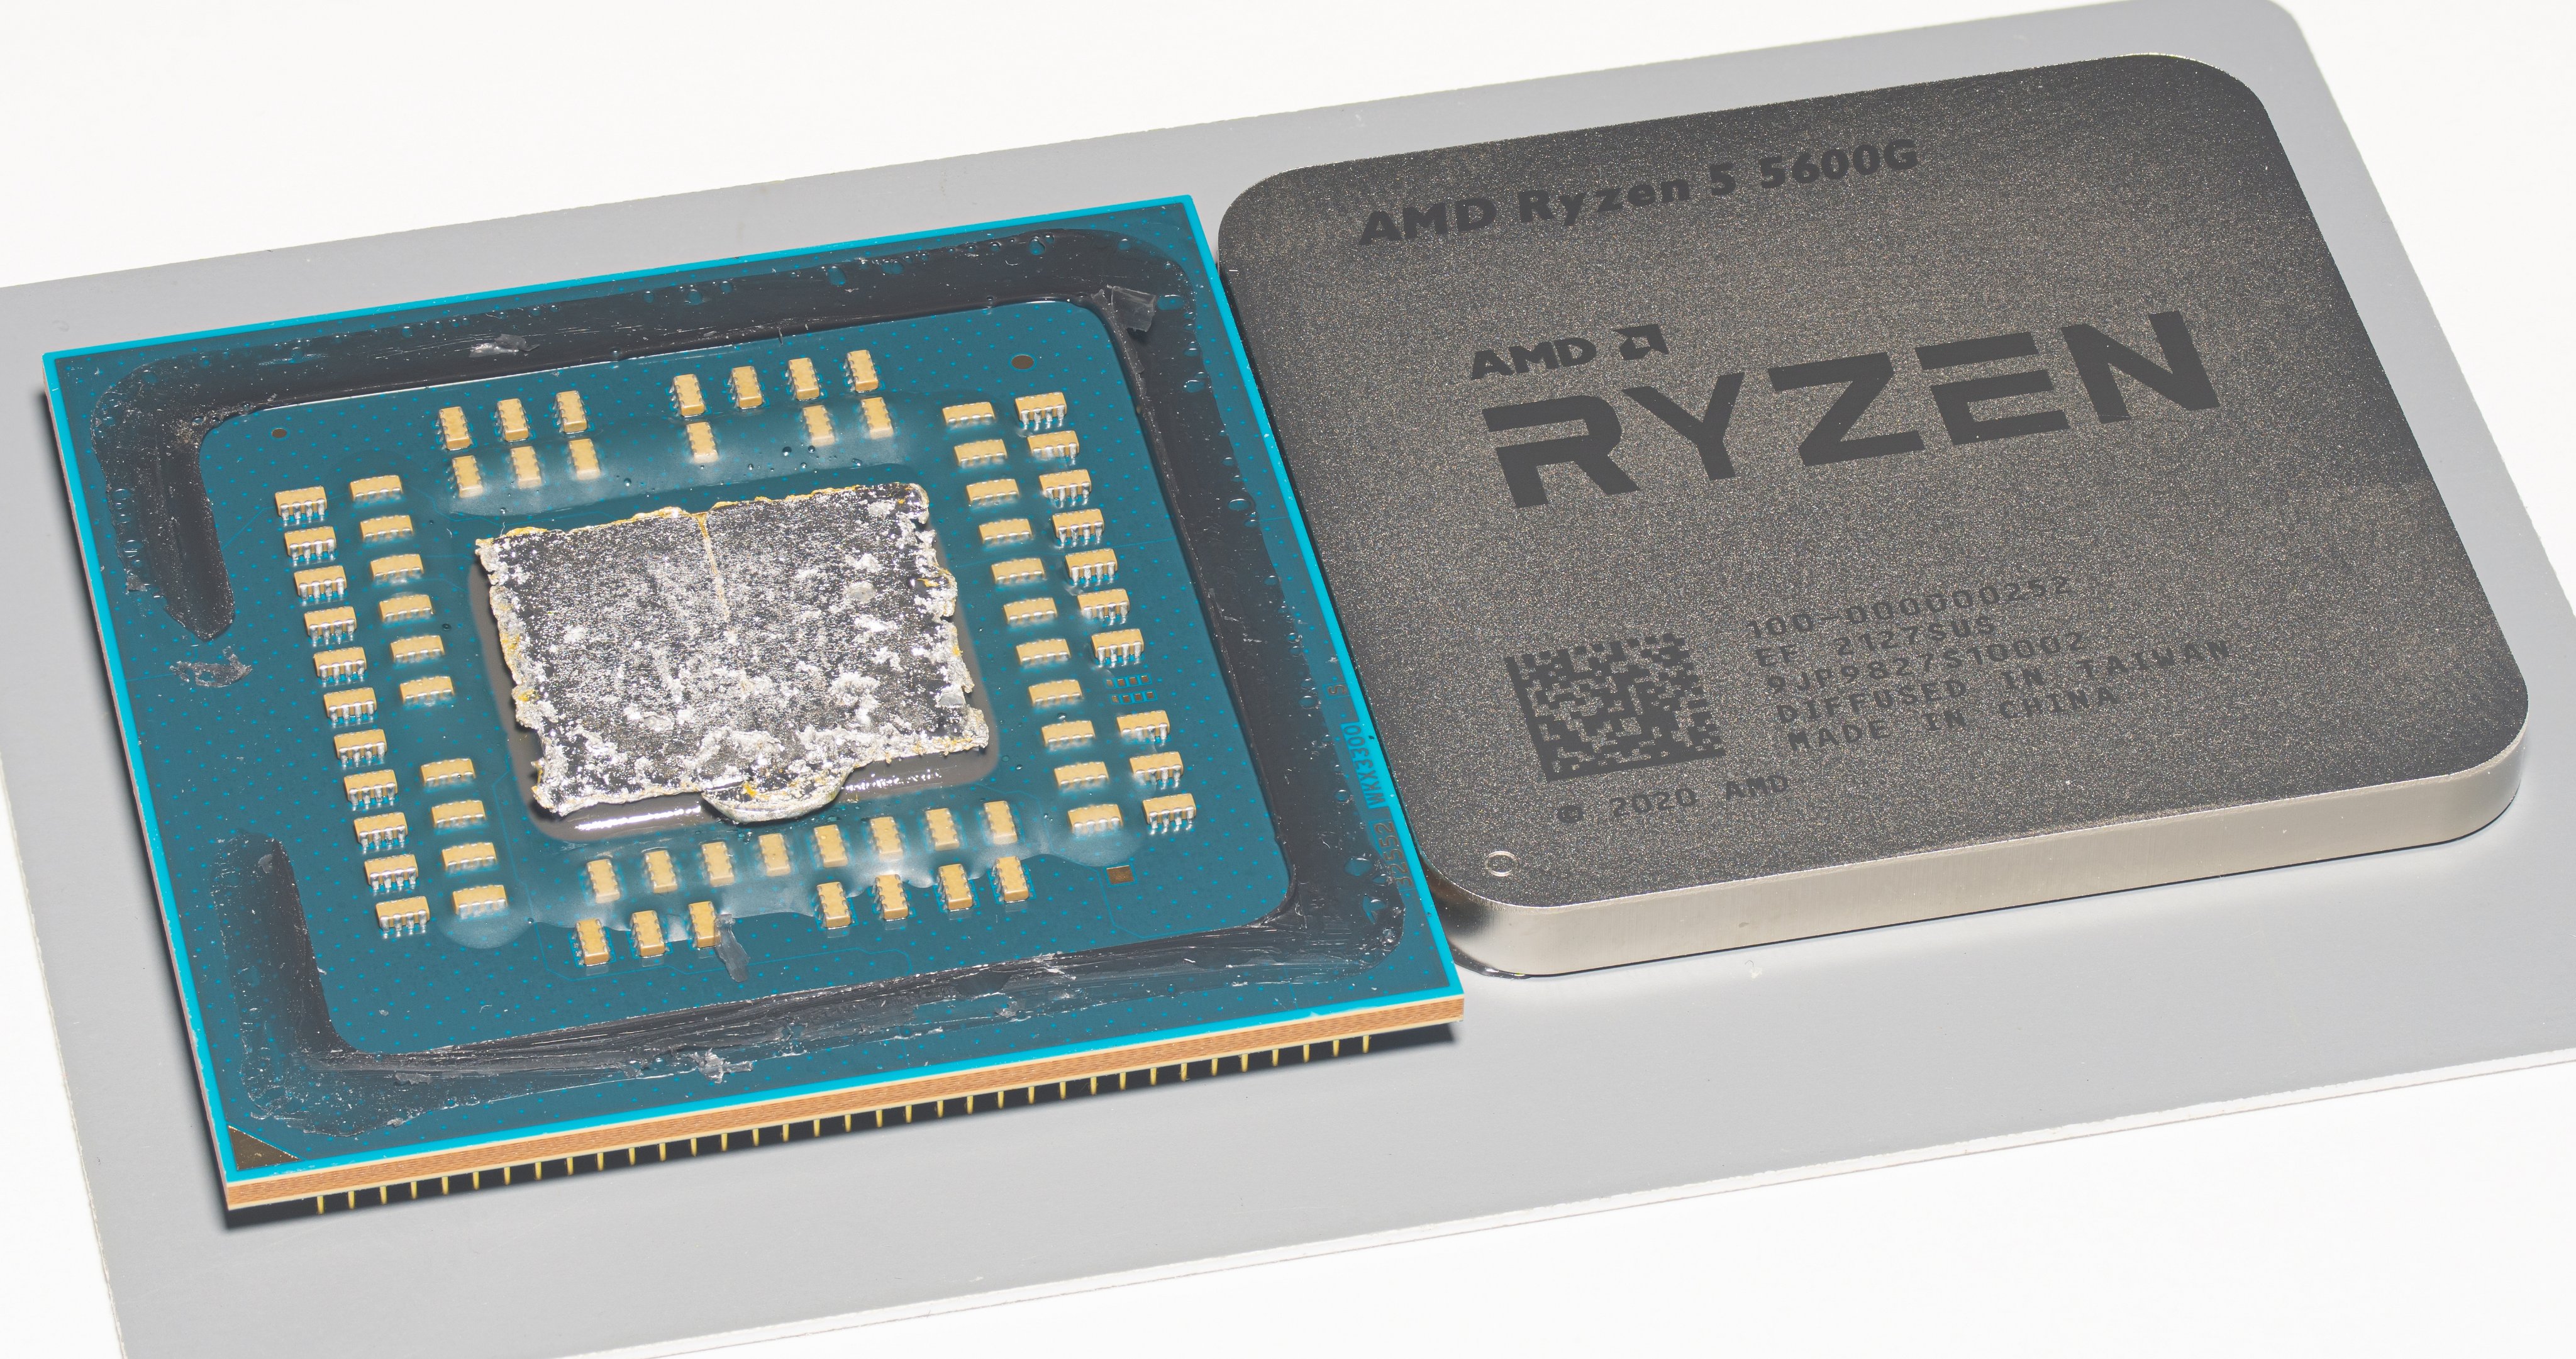 Райзен 5 5600. Ryzen 5 5600g Кристалл. Процессор AMD Ryzen 5 5600g. Ryzen 5 5600g под крышкой процессора. Ryzen 5 5600g под крышкой.